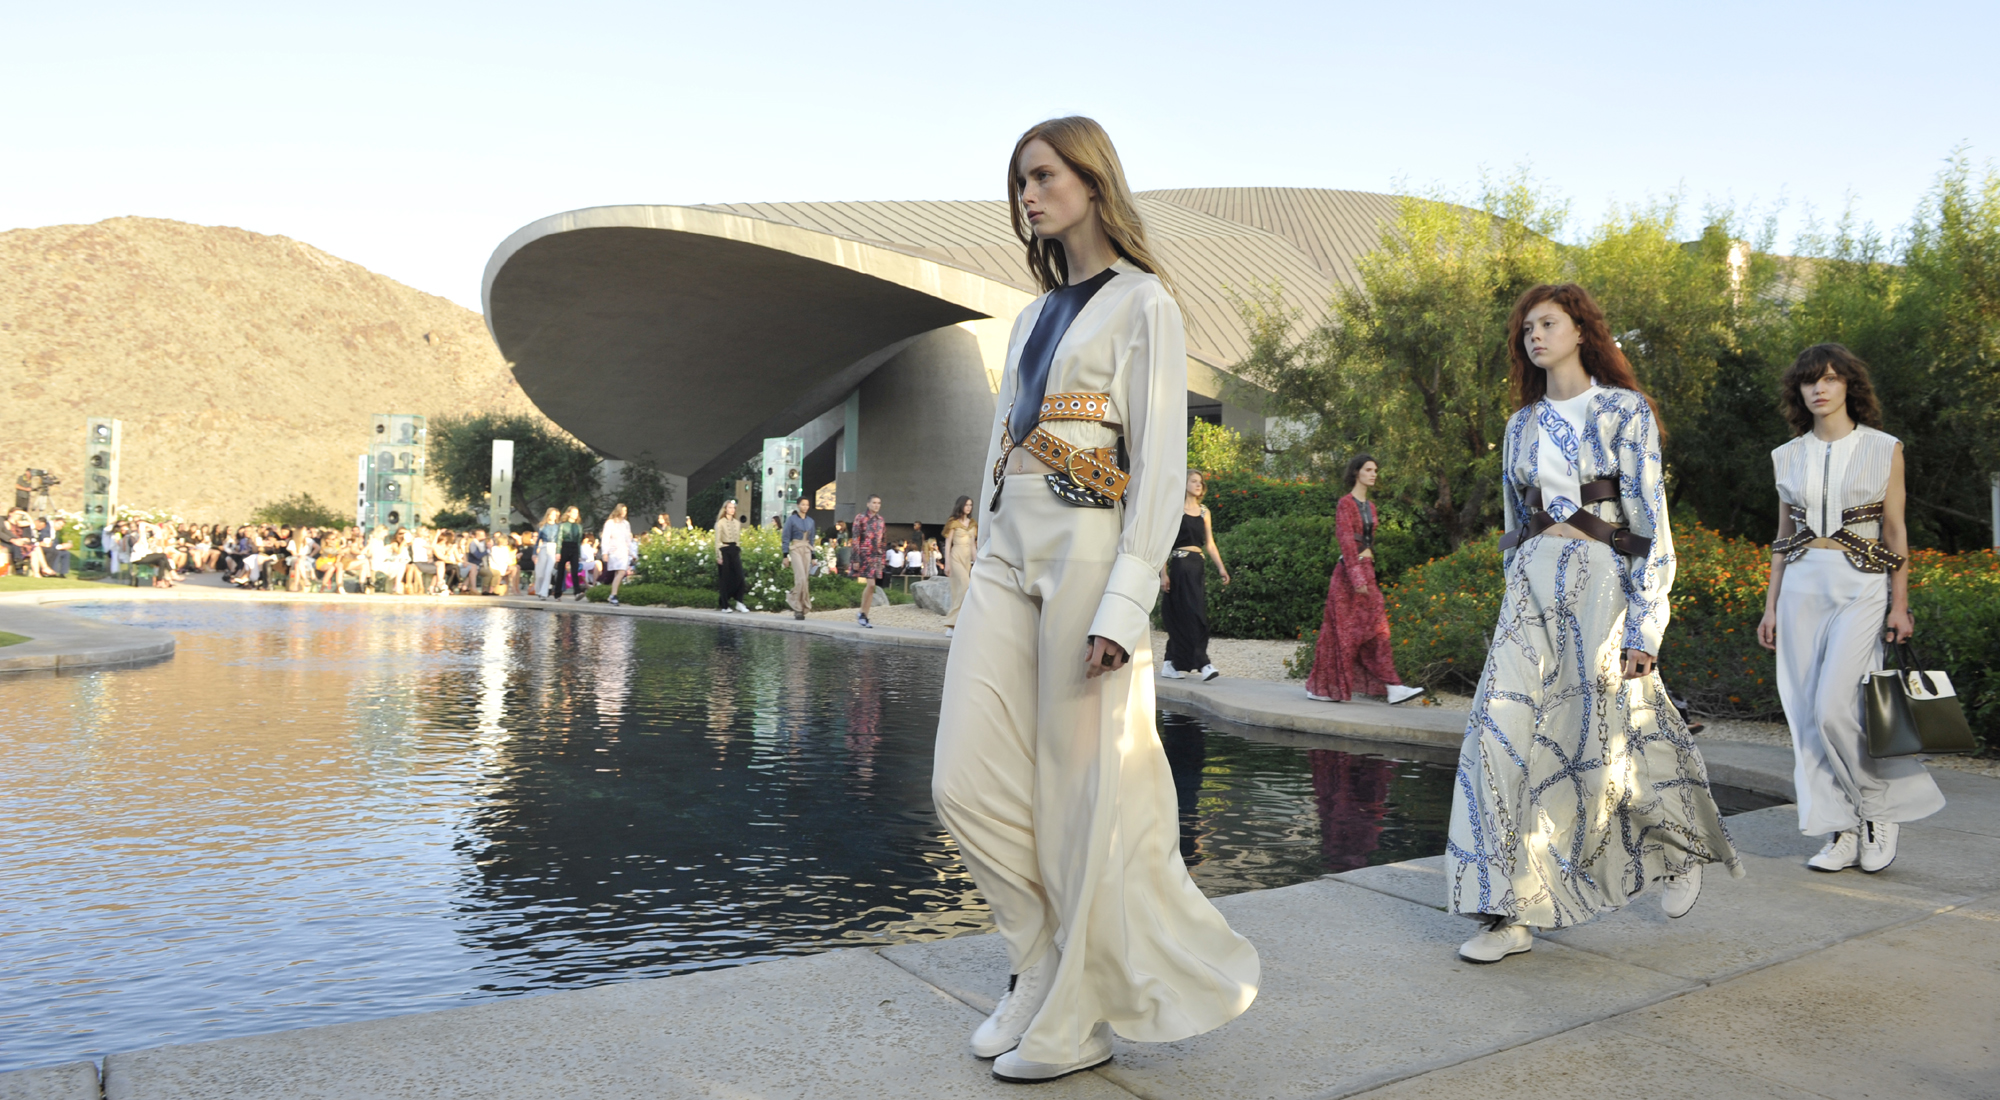 Christian Dior and Louis Vuitton take a cruise - LVMH